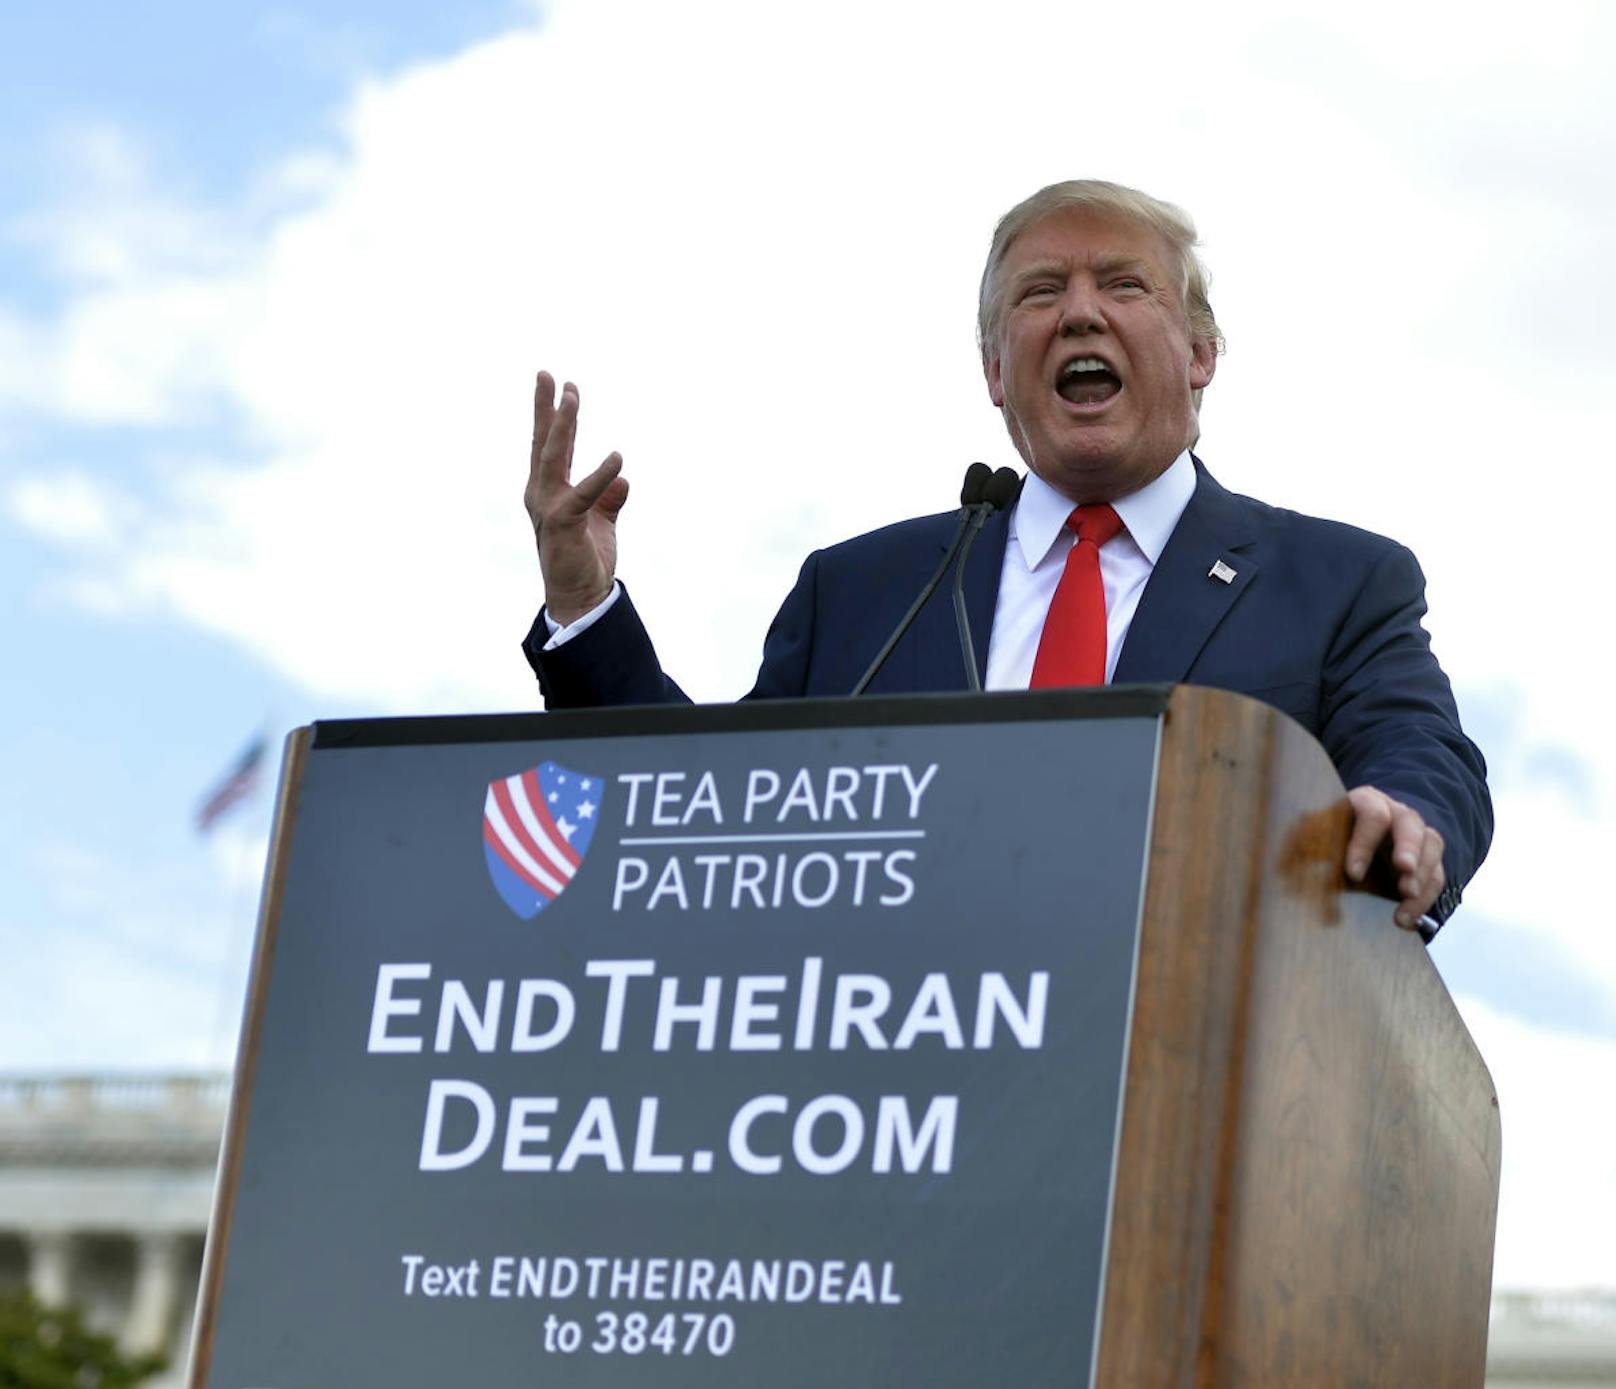 Donald Trump hetzte schon im Jahr 2015 bei einer Veranstaltung der Tea Party vor dem Kapitol gegen den Iran Atom Deal.